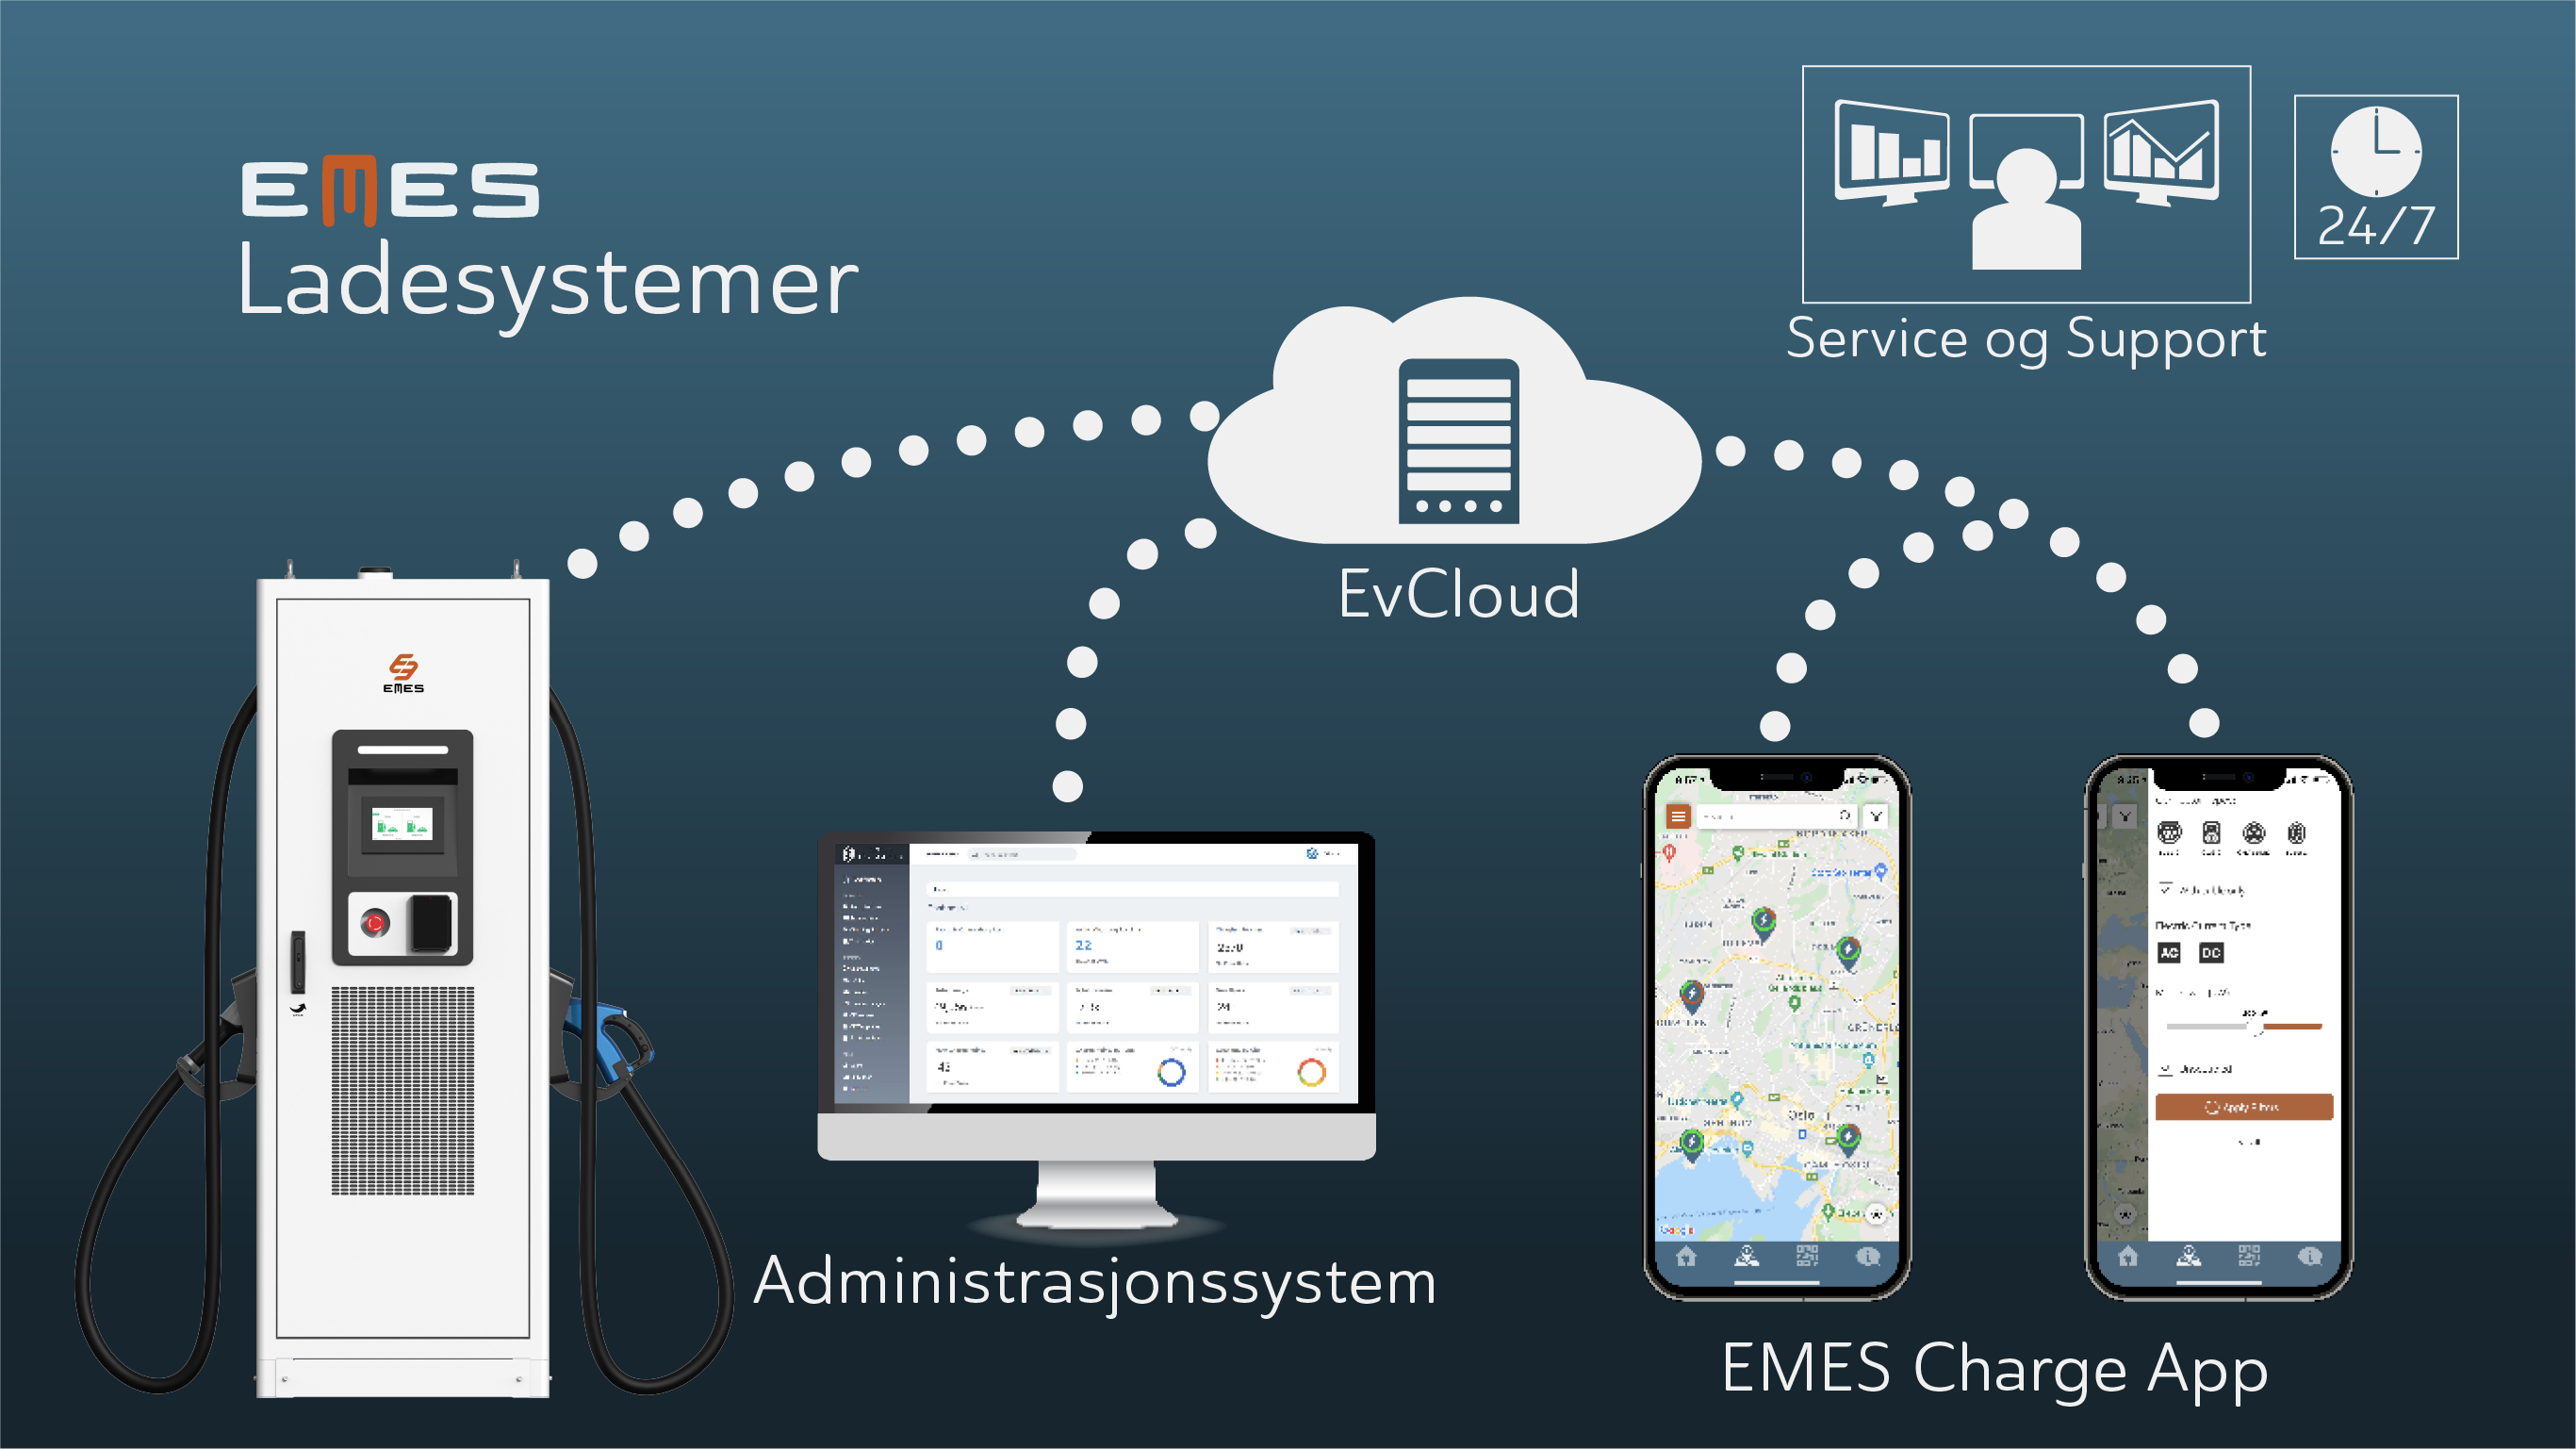 Infografikk som illustrerer hvordan EMES ladesystemer henger sammen. En hurtigladerstolpe, administrasjonssystemet EvCloud og EMES Charge app henger er alle koblet sammen gjennom en skyløsning. Illustrasjonen sier også at EMES Service og support er tilgjengelig 24/7.